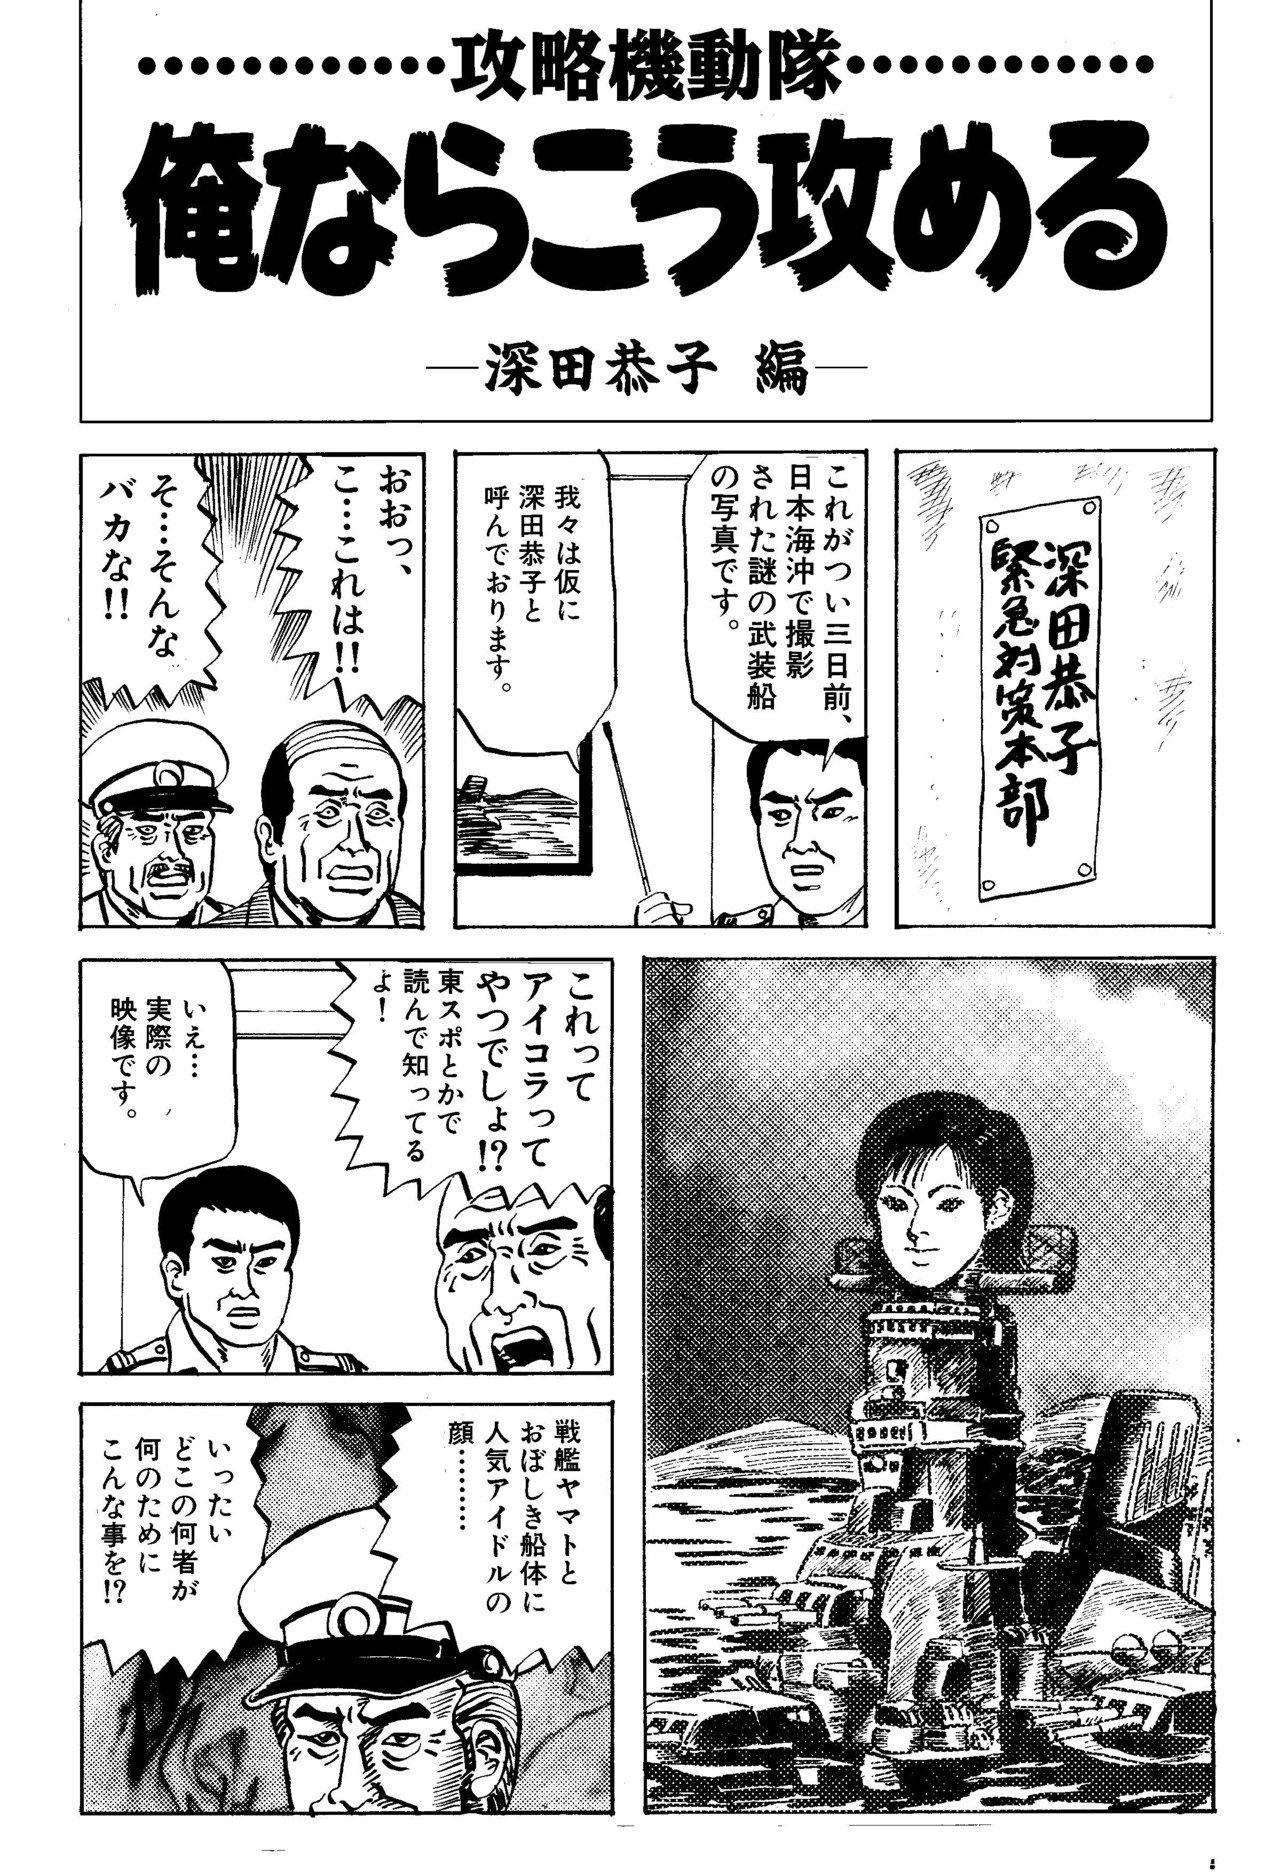 ほりのぶゆき 漫画家 江戸むらさき特急 Akihiko810 のブックマーク はてなブックマーク